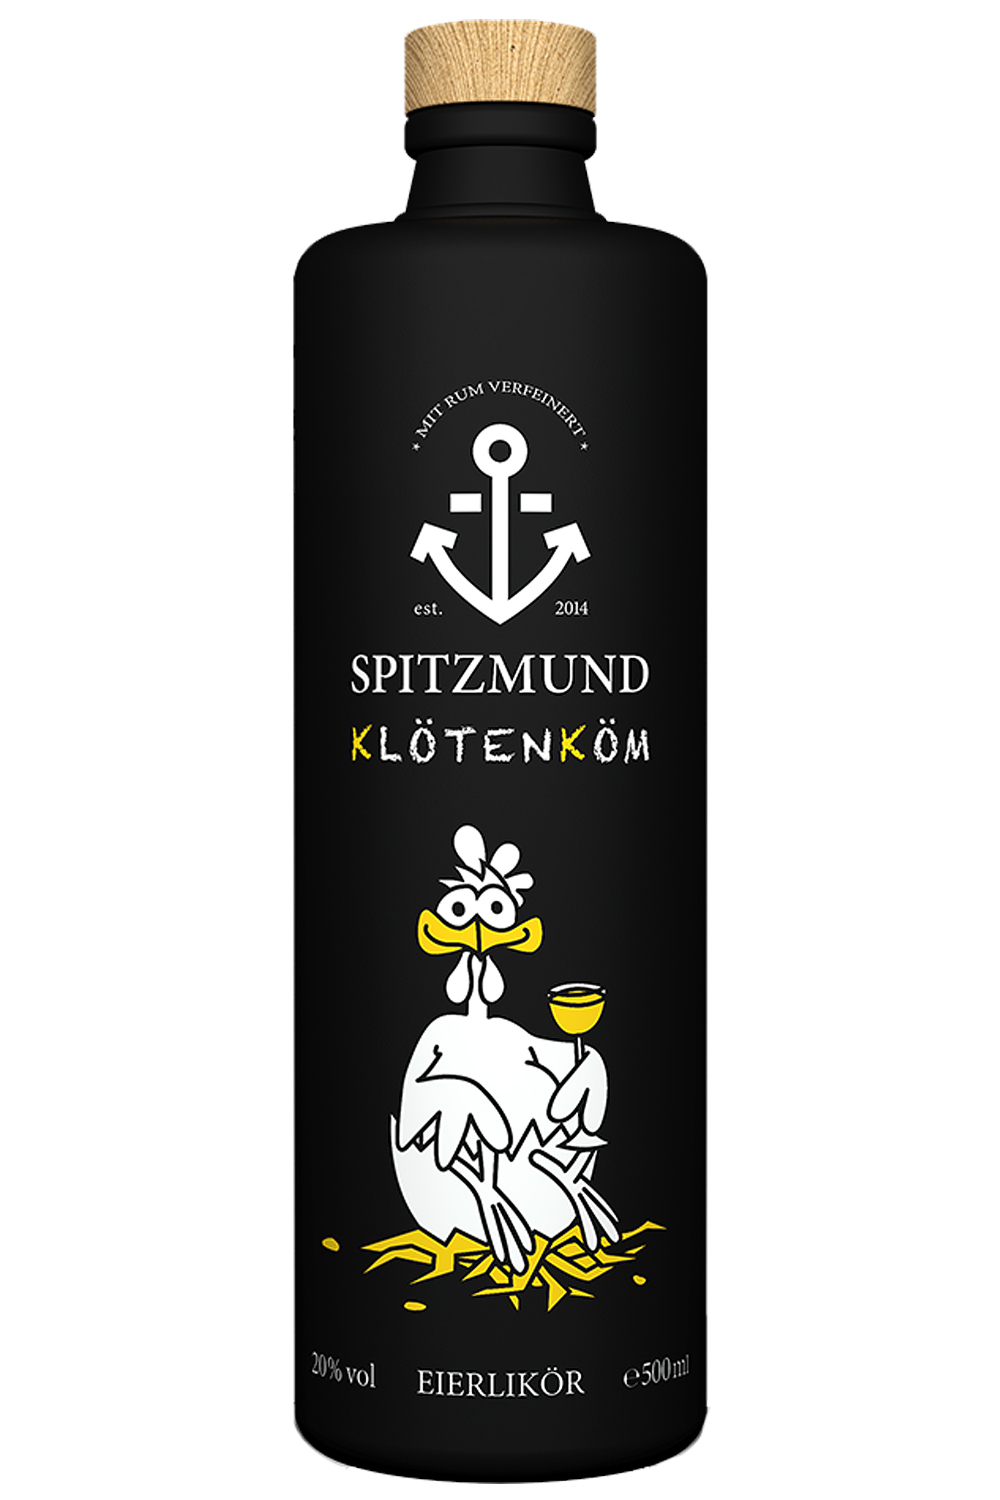 Spitzmund Klötenköm Eierlikör 0,5 Liter - Getraenke-Handel.com ist Ihr ...